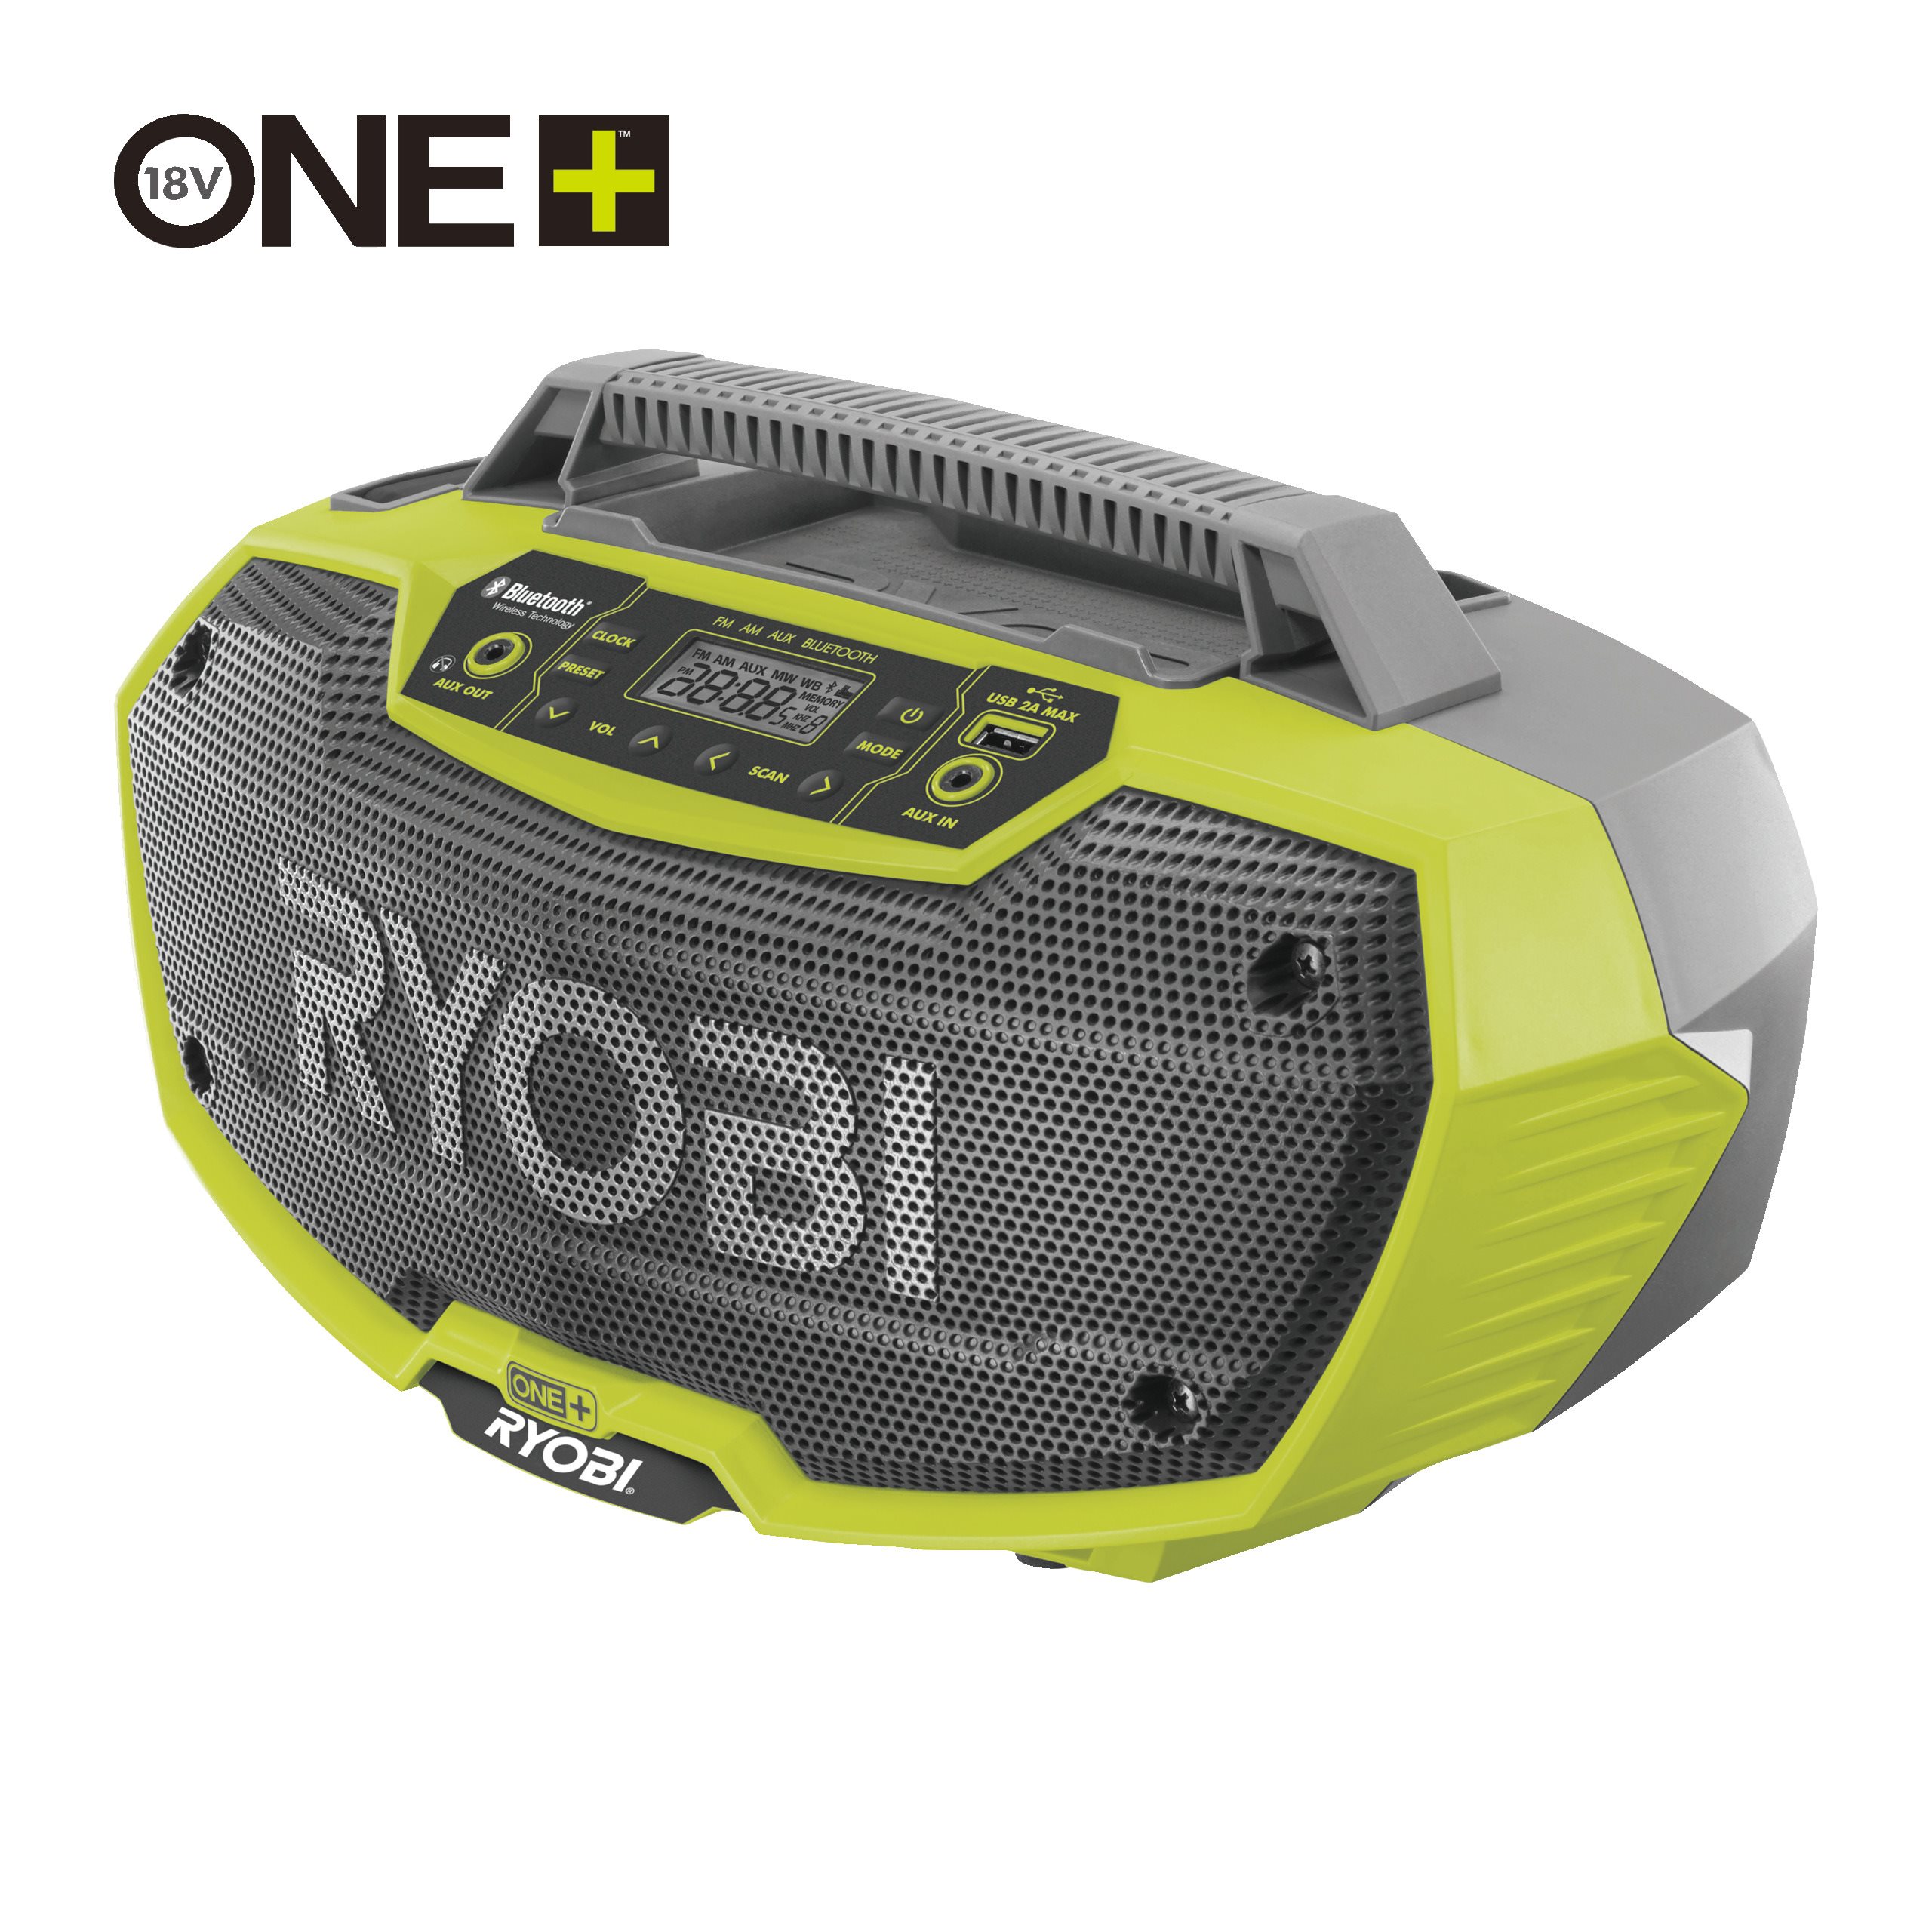 Radiot | Sähkötyökalut | Ryobi